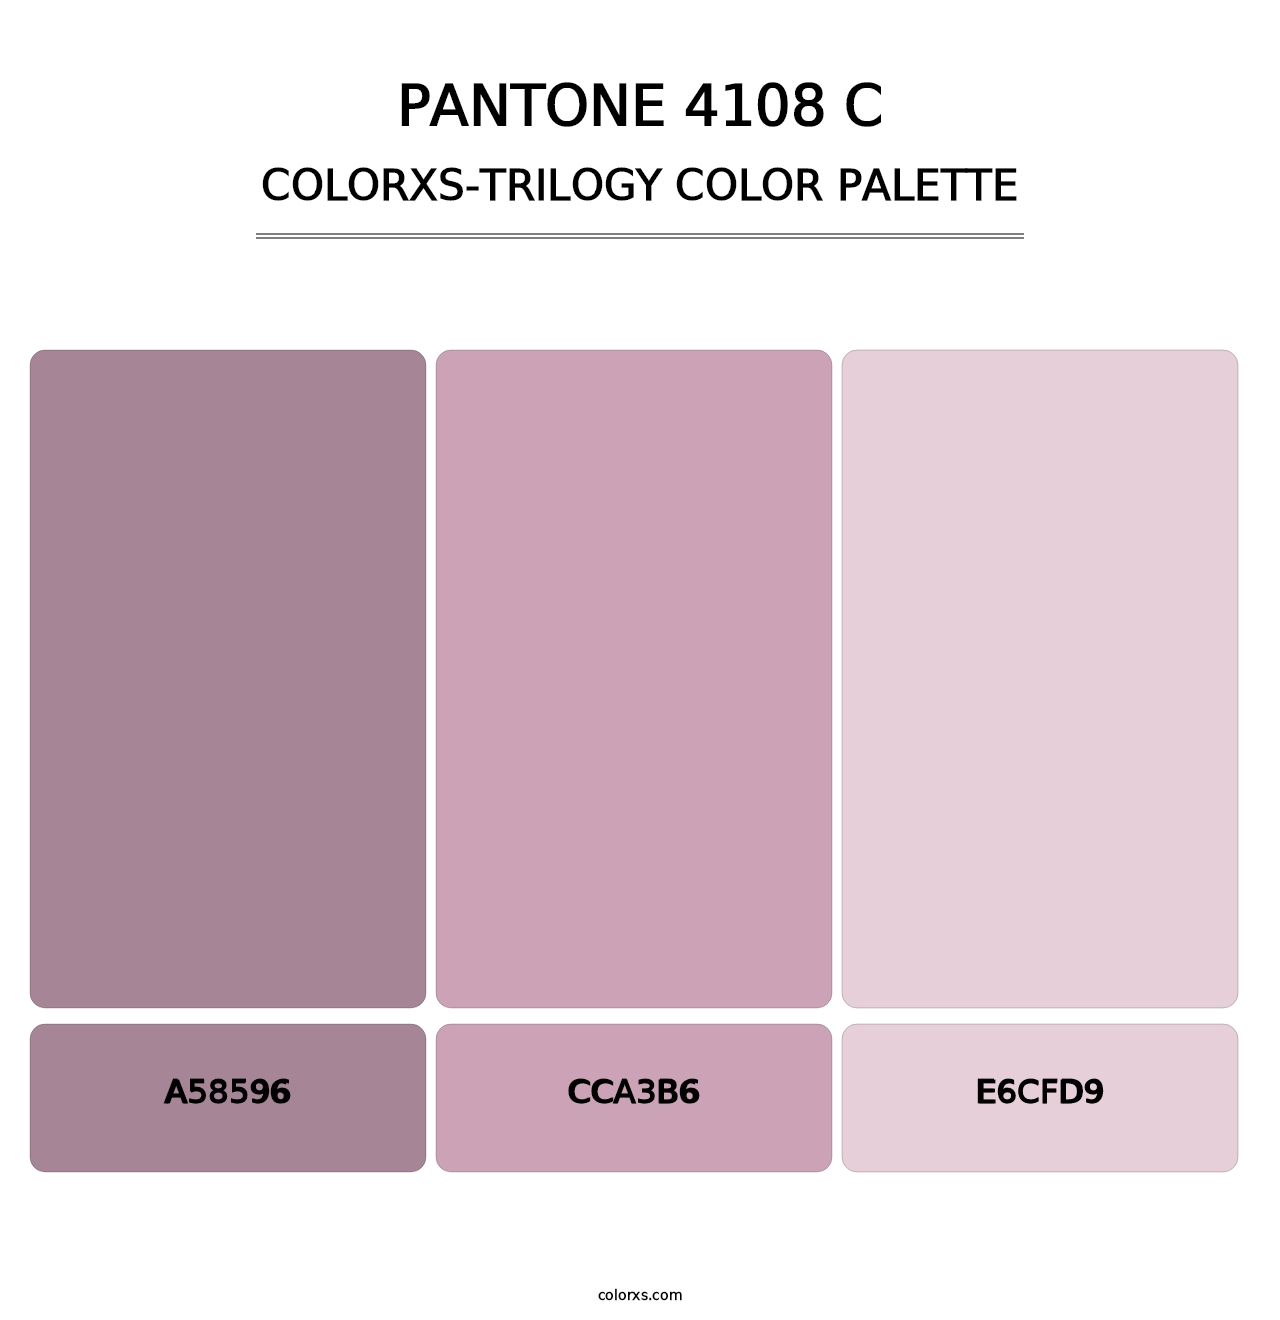 PANTONE 4108 C - Colorxs Trilogy Palette